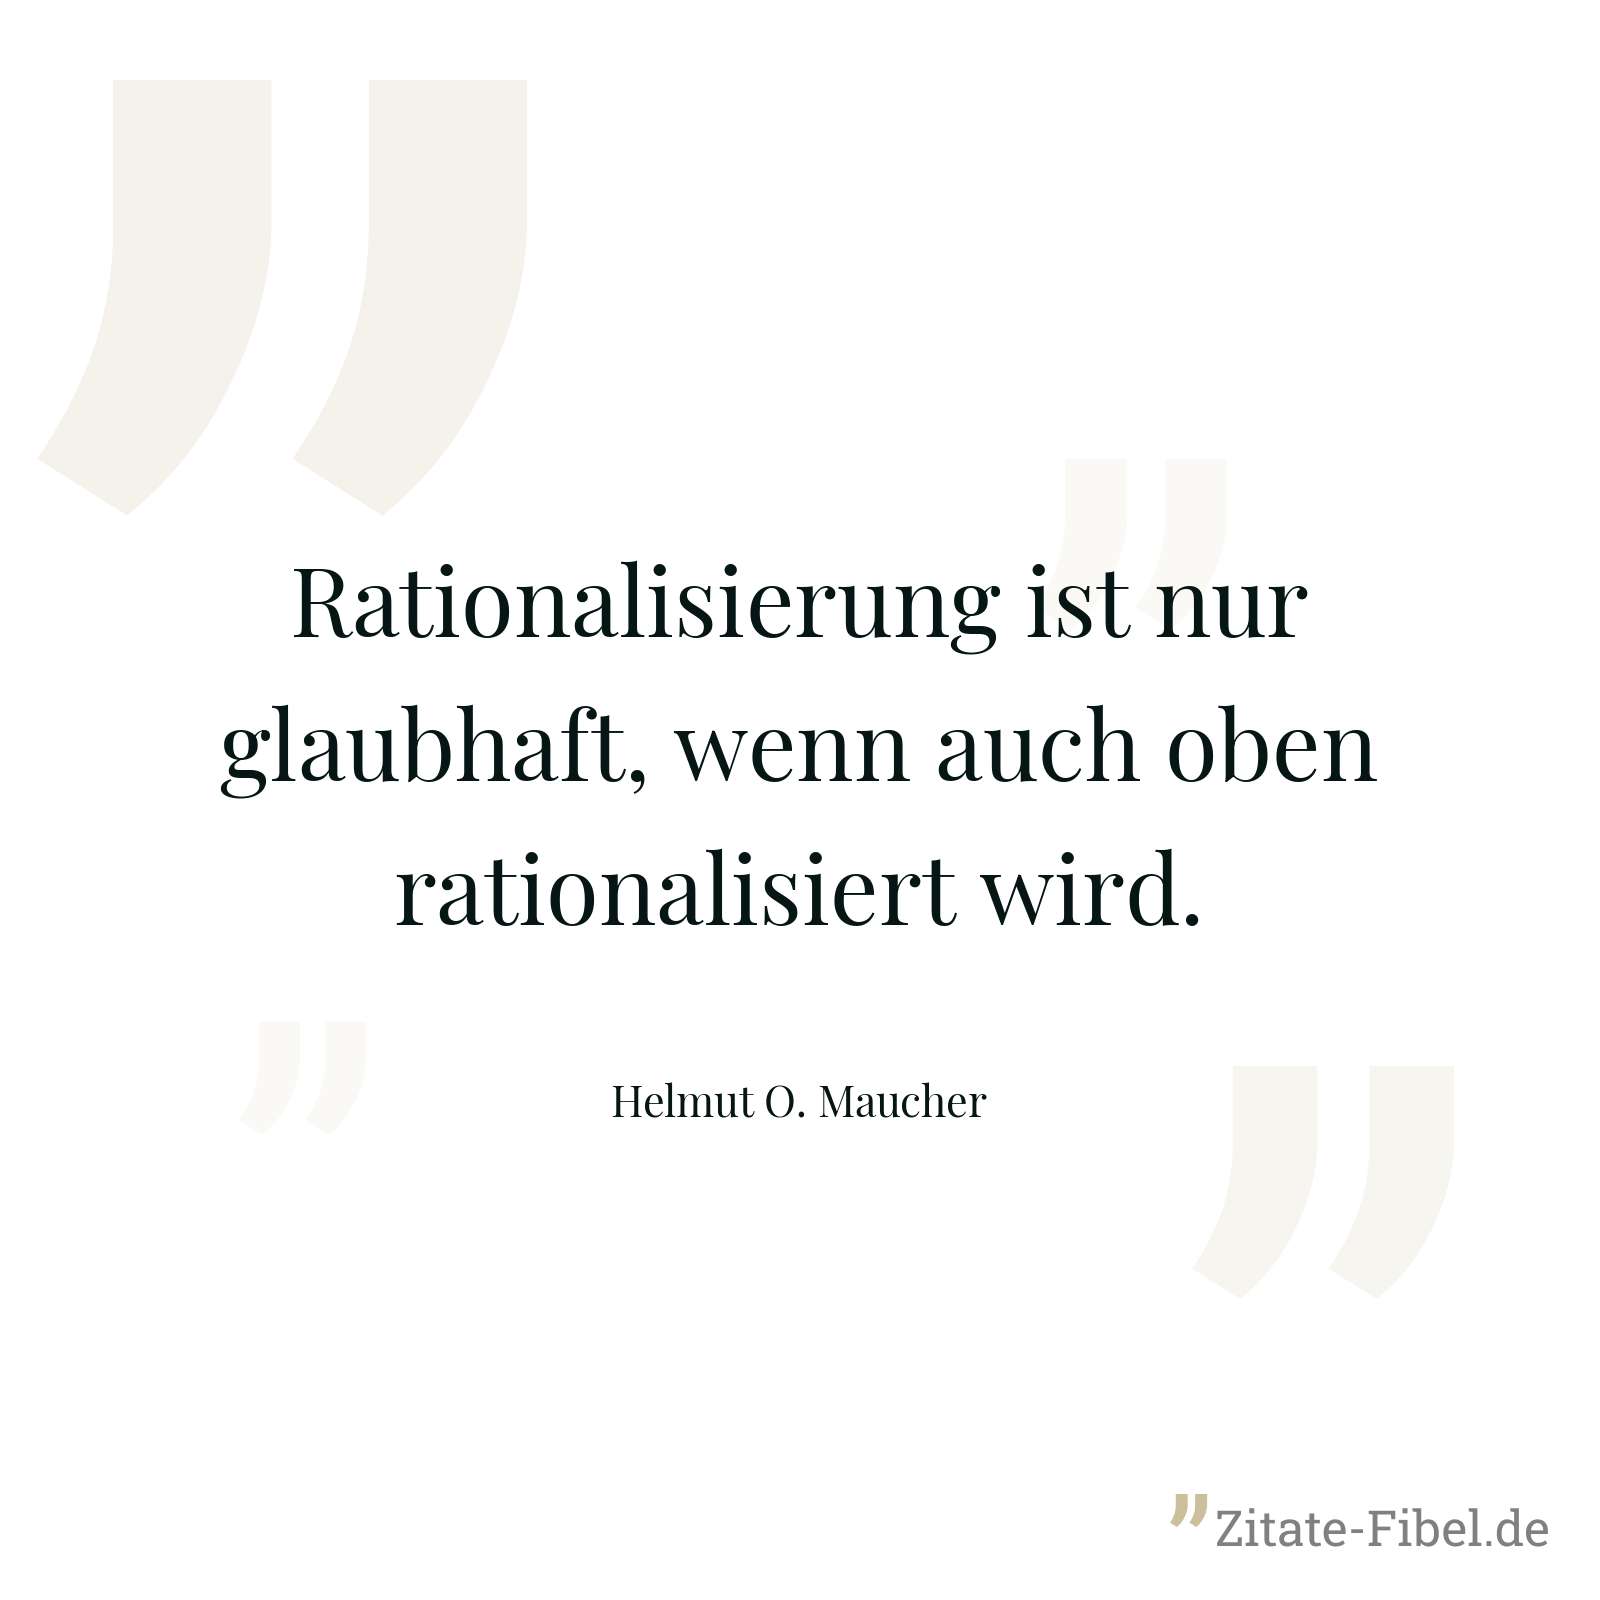 Rationalisierung ist nur glaubhaft, wenn auch oben rationalisiert wird. - Helmut O. Maucher